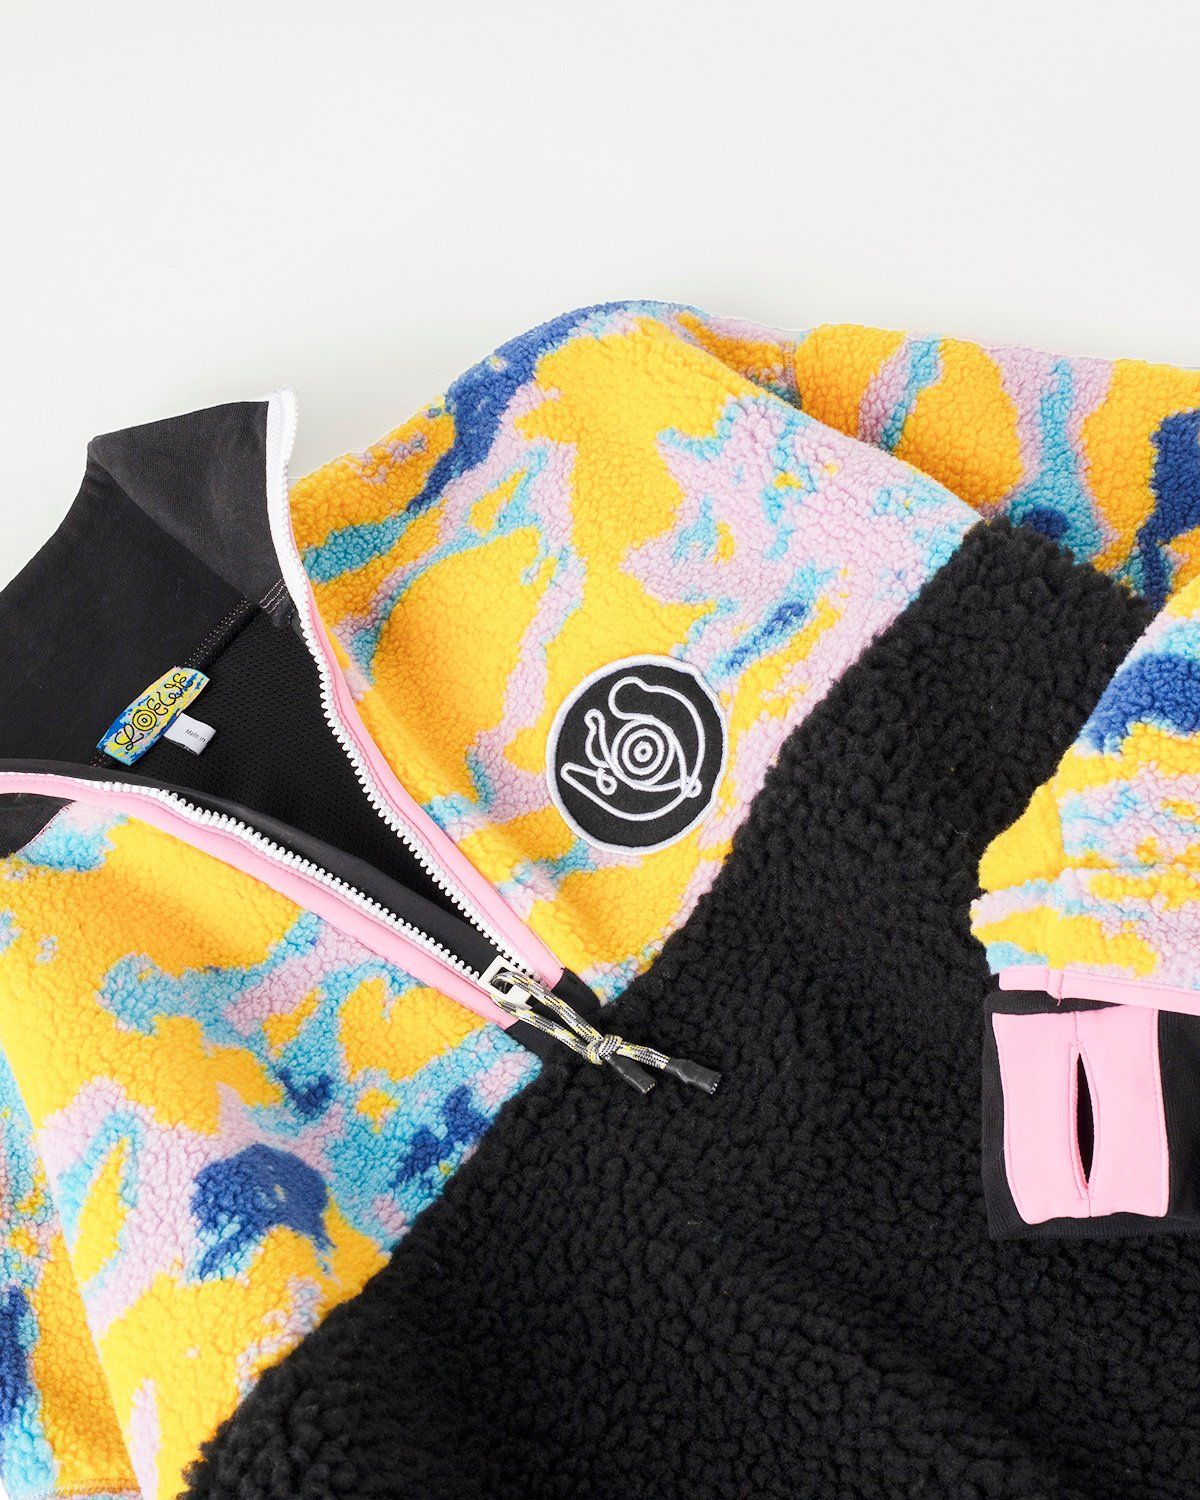 Loewe – Fleece Zip Sweater Multicolor - Zip-Ups - Multi - Image 4